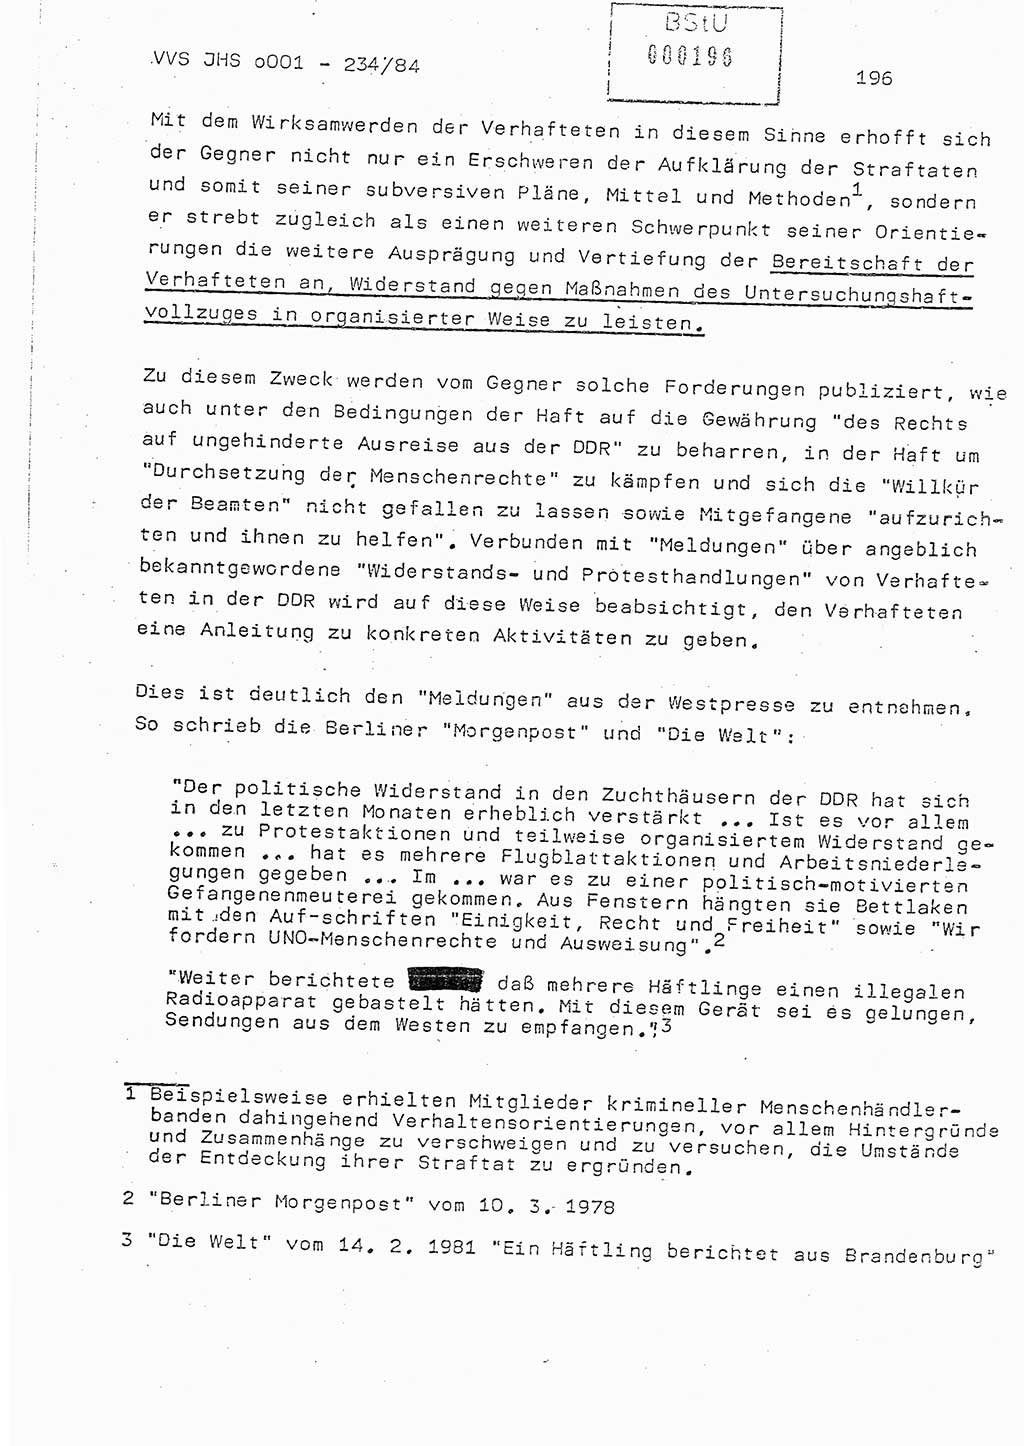 Dissertation Oberst Siegfried Rataizick (Abt. ⅩⅣ), Oberstleutnant Volkmar Heinz (Abt. ⅩⅣ), Oberstleutnant Werner Stein (HA Ⅸ), Hauptmann Heinz Conrad (JHS), Ministerium für Staatssicherheit (MfS) [Deutsche Demokratische Republik (DDR)], Juristische Hochschule (JHS), Vertrauliche Verschlußsache (VVS) o001-234/84, Potsdam 1984, Seite 196 (Diss. MfS DDR JHS VVS o001-234/84 1984, S. 196)